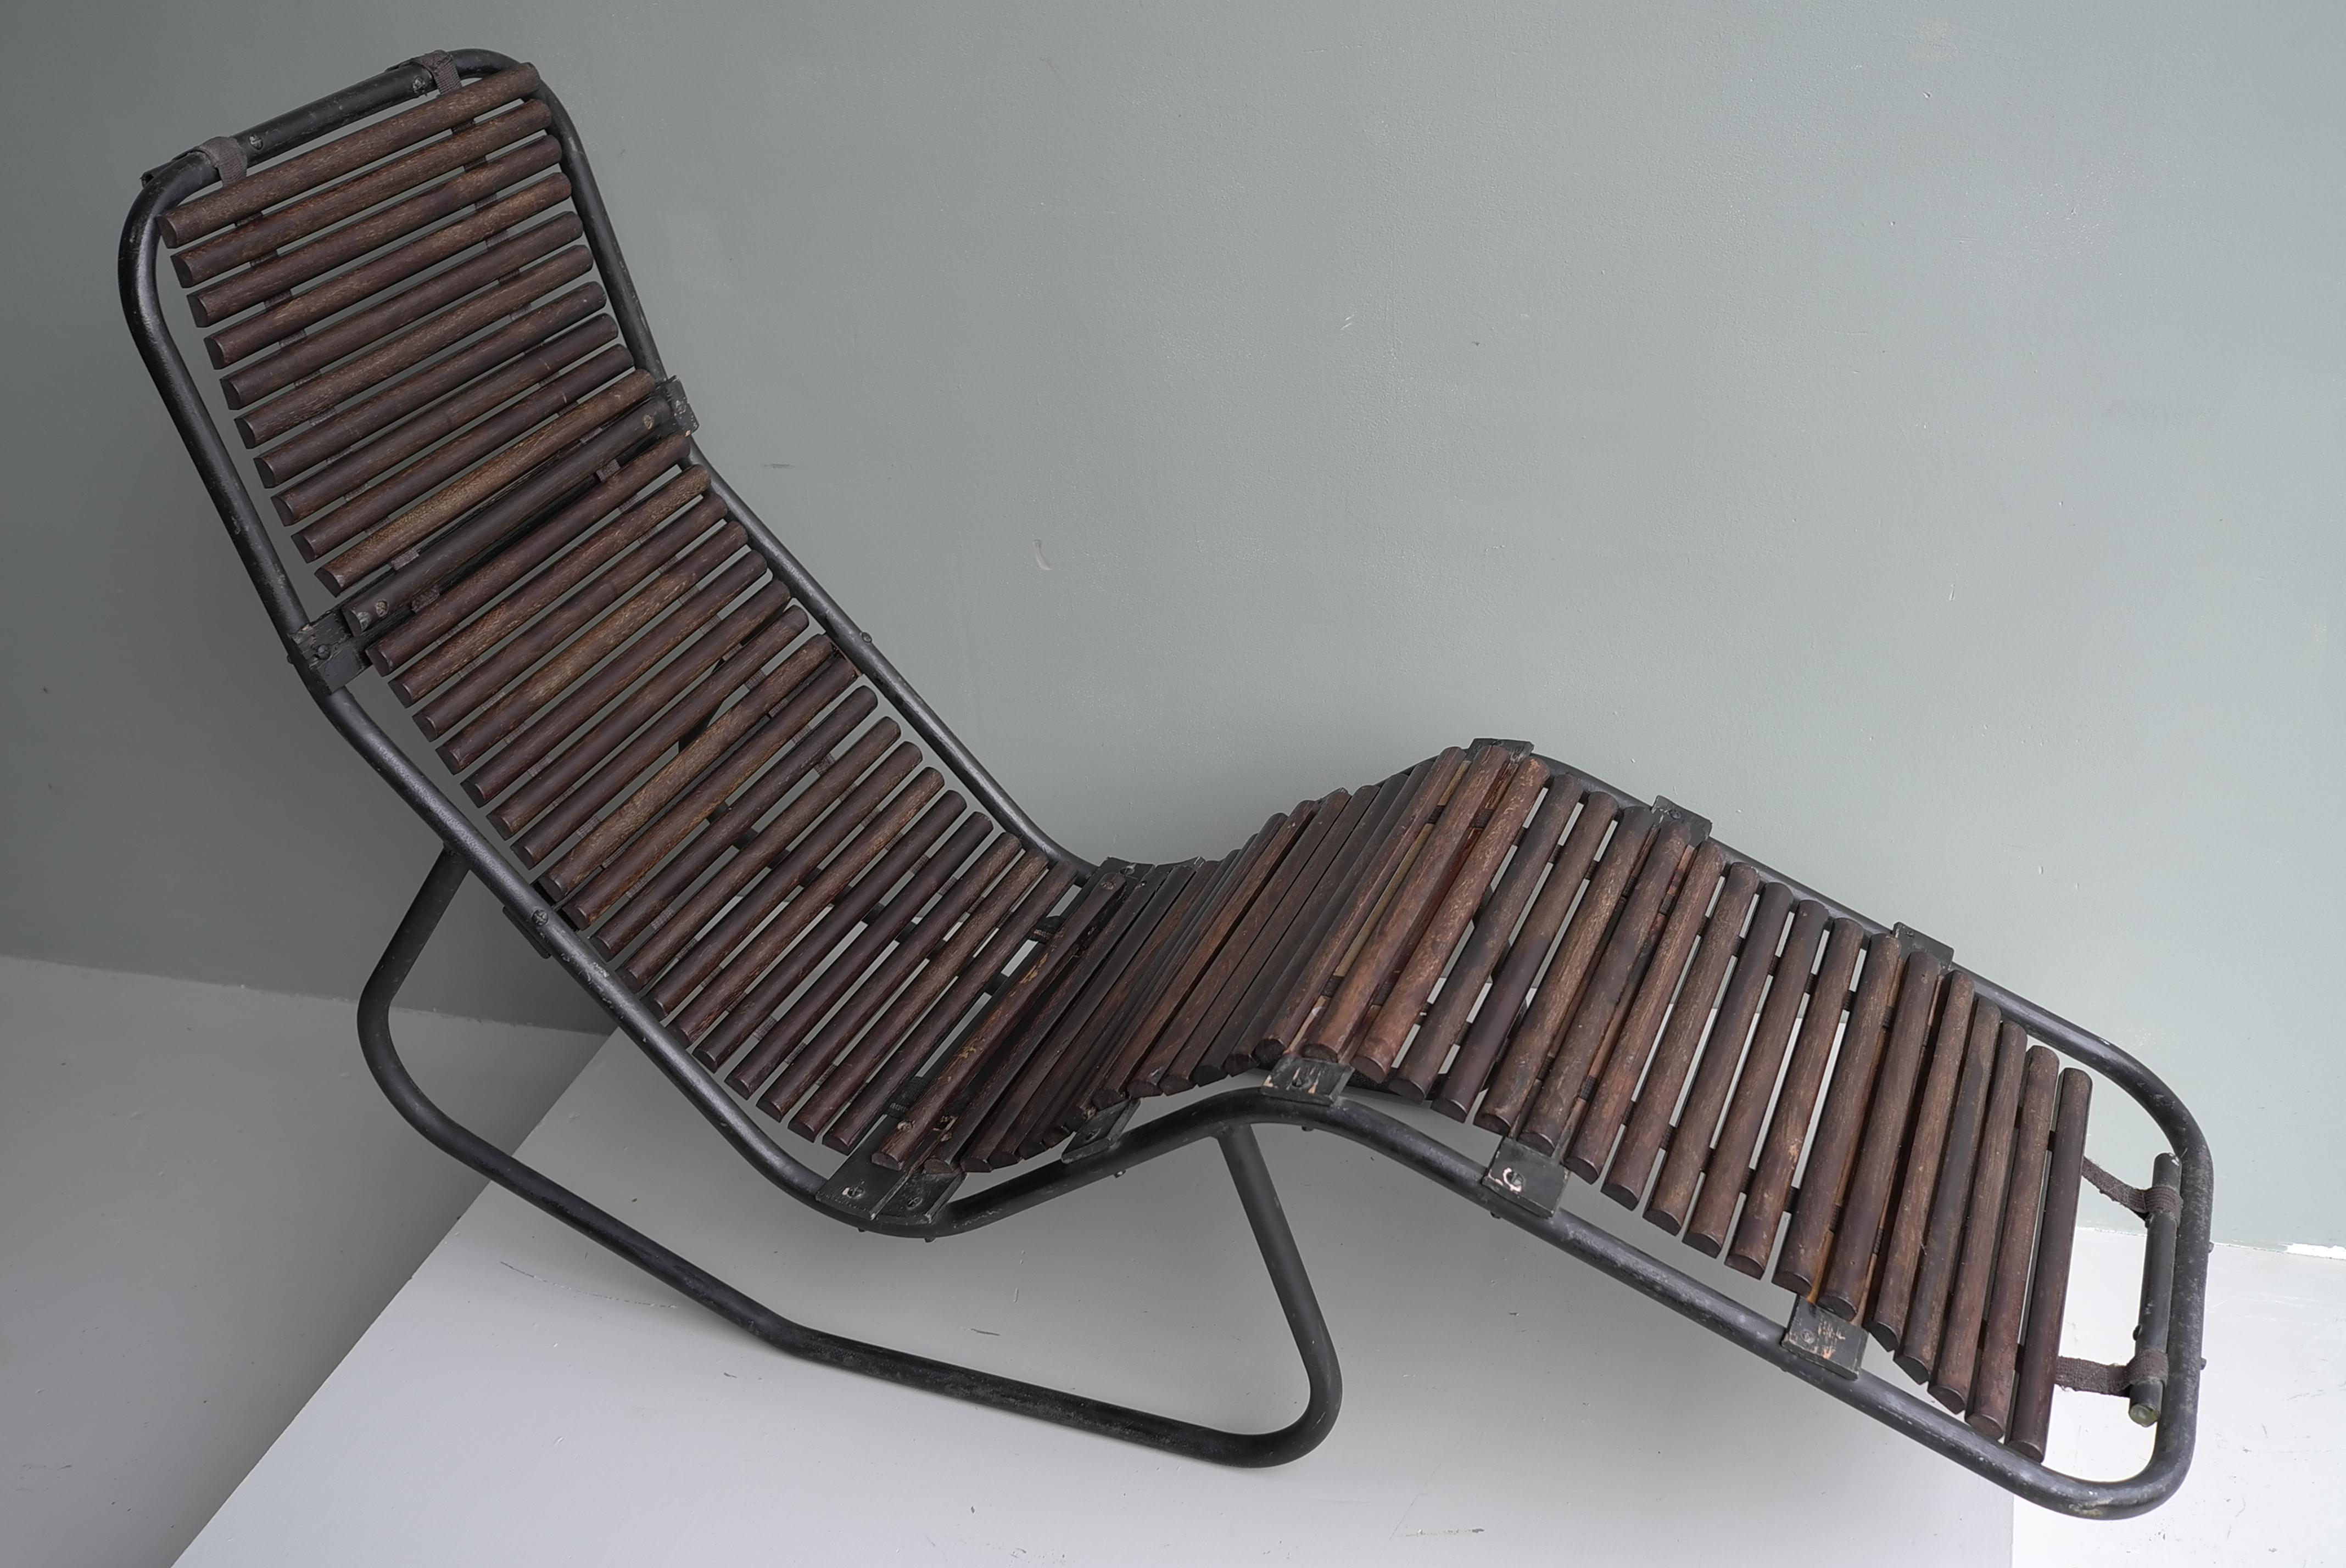 Chaise longue en acier tubulaire et bois dur, France, années 1940.

Cette chaise longue unique en son genre possède une position normale et une position inclinée.